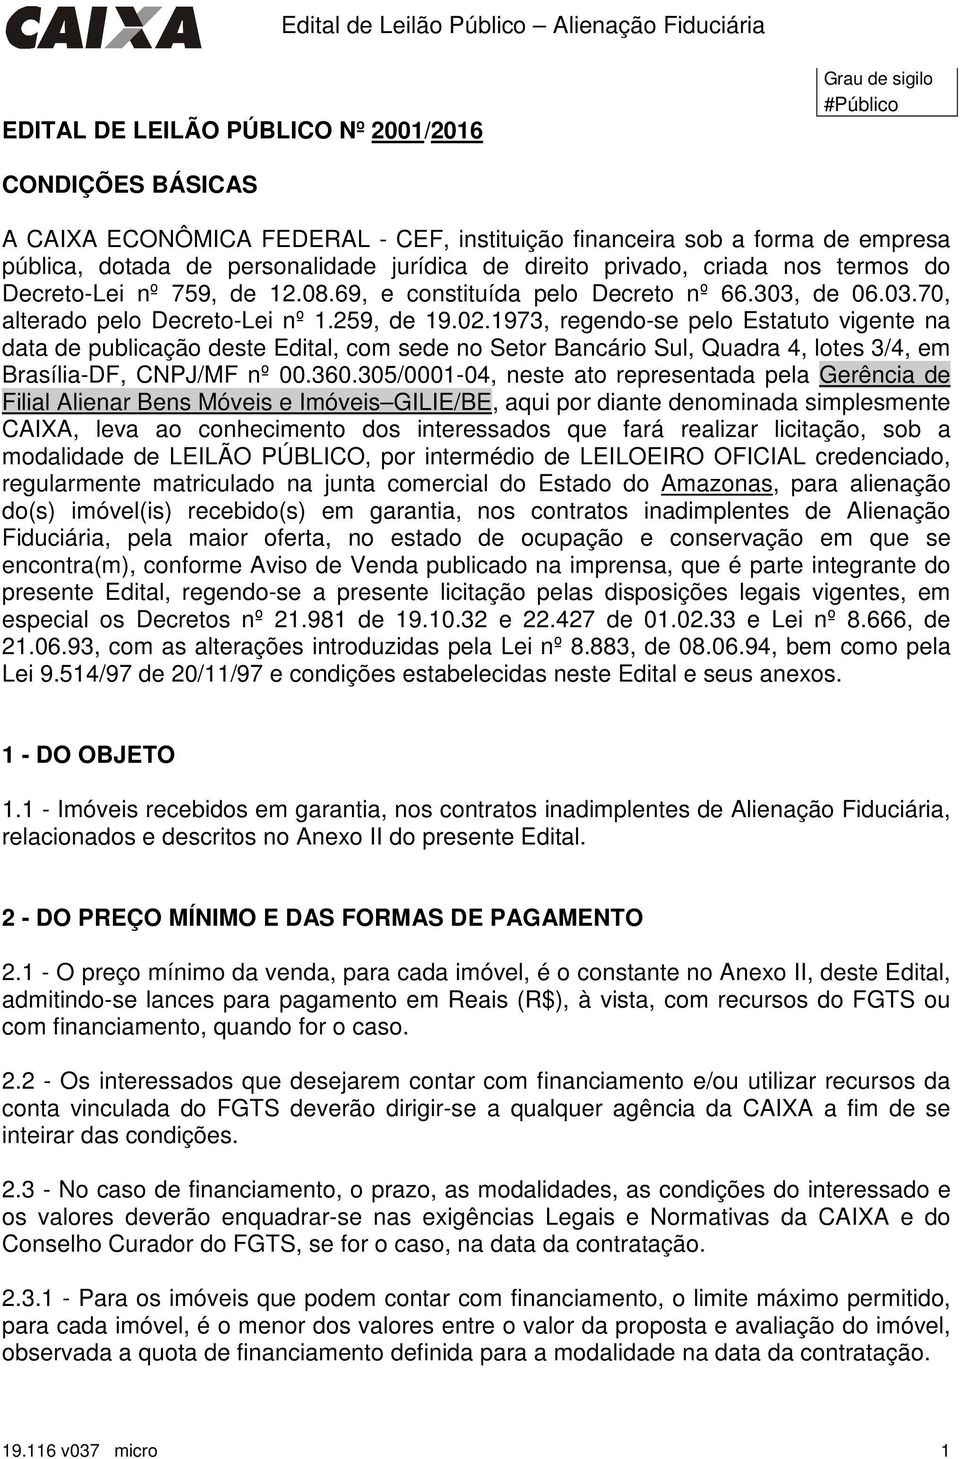 1973, regendo-se pelo Estatuto vigente na data de publicação deste Edital, com sede no Setor Bancário Sul, Quadra 4, lotes 3/4, em Brasília-DF, CNPJ/MF nº 00.360.